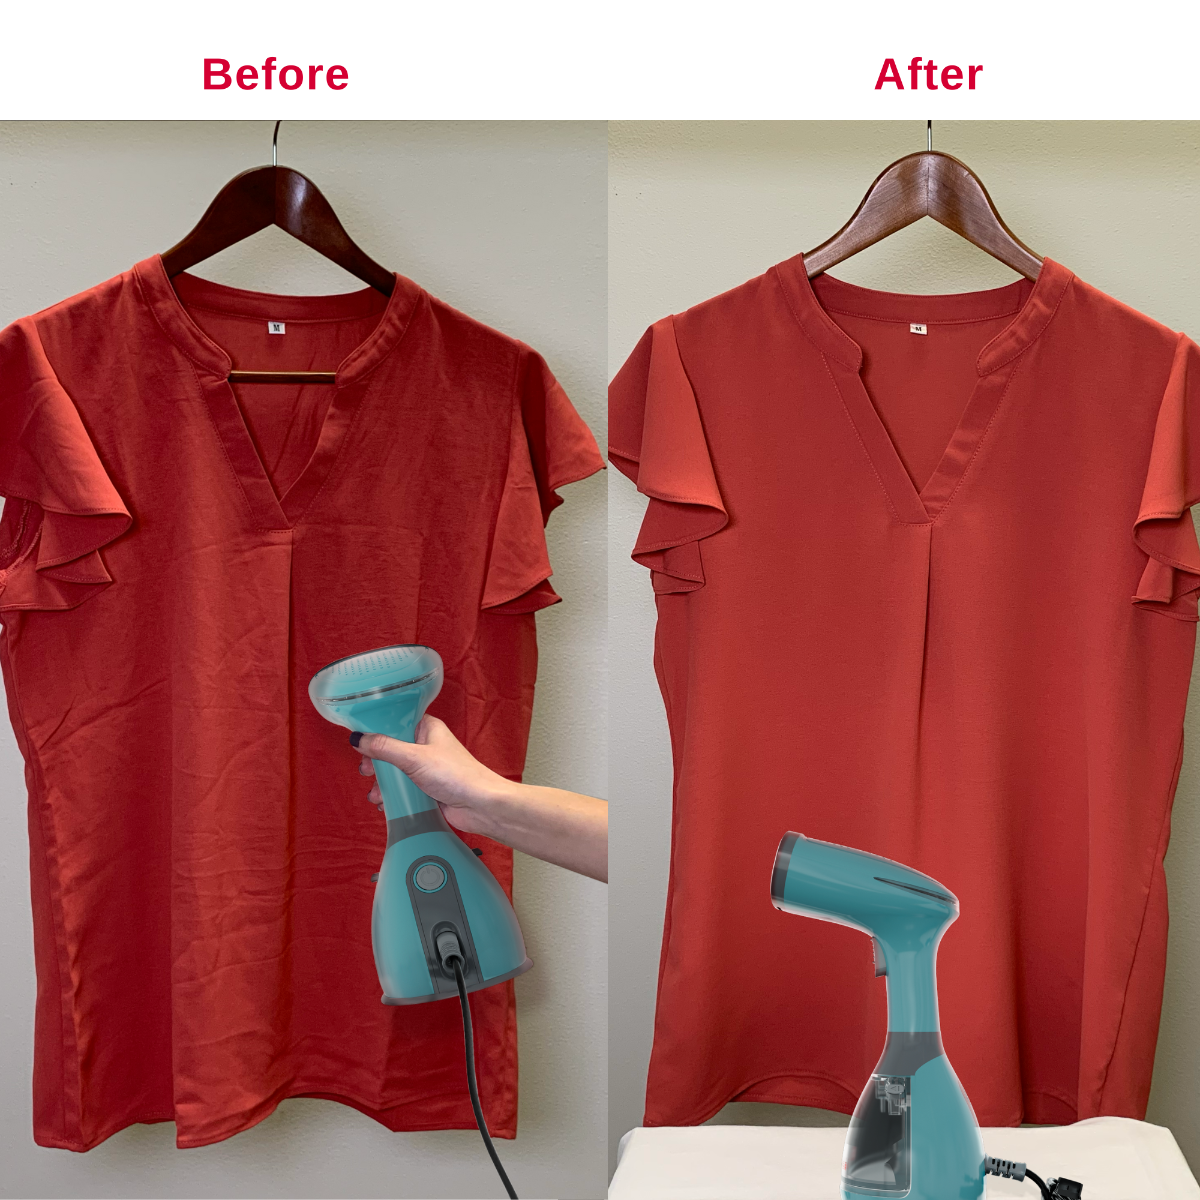 SINGER Handheld Garment Steamer – Quality Sewing & Vacuum